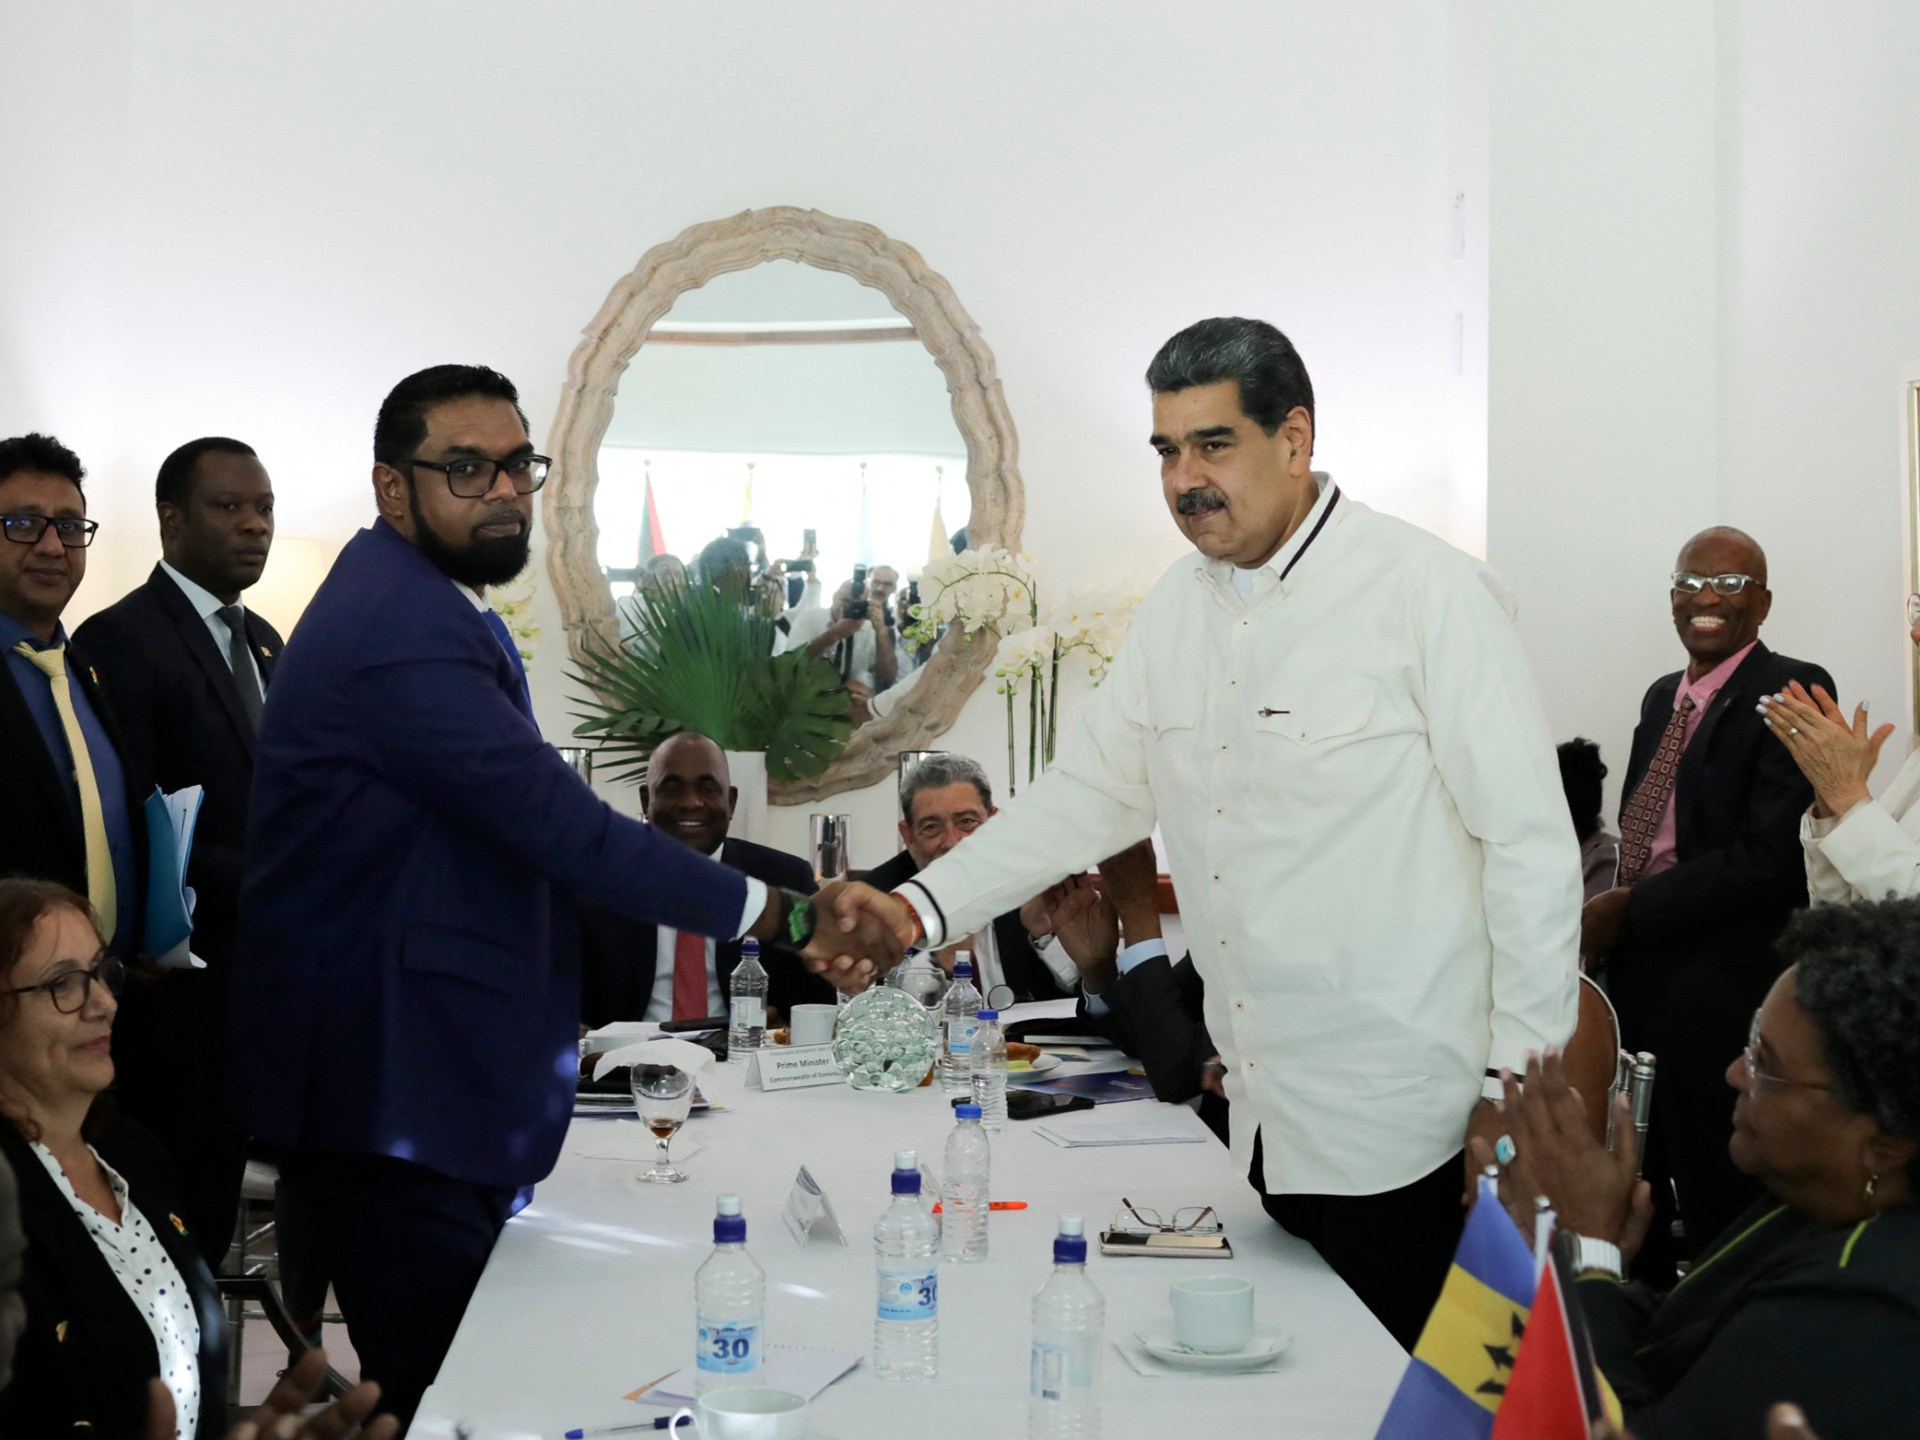 Venezuela și Guyana convin să nu folosească forța în conflictul Esquibo |  Știri politice